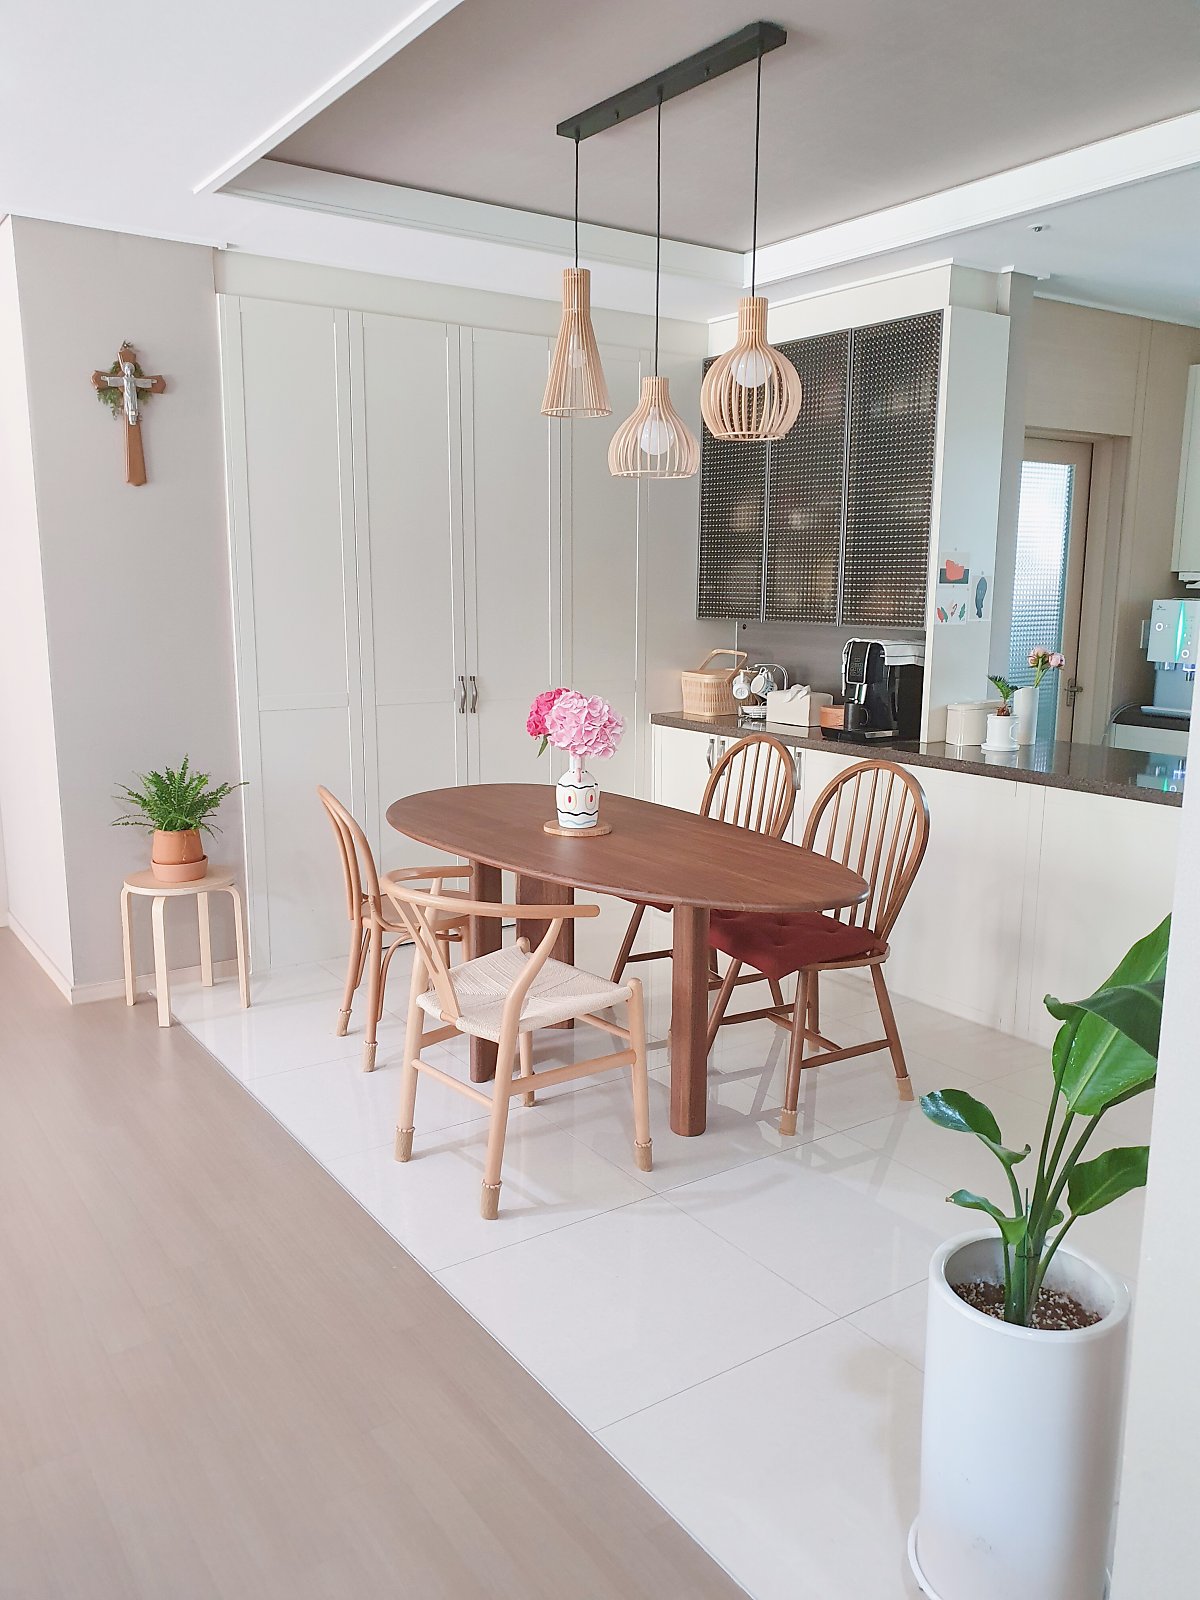 Thiết kế căn hộ theo phong cách tối giản, mẹ bỉm sữa Hàn Quốc biến phòng khách thành không gian vui chơi “đã đời” cho bé - Ảnh 6.